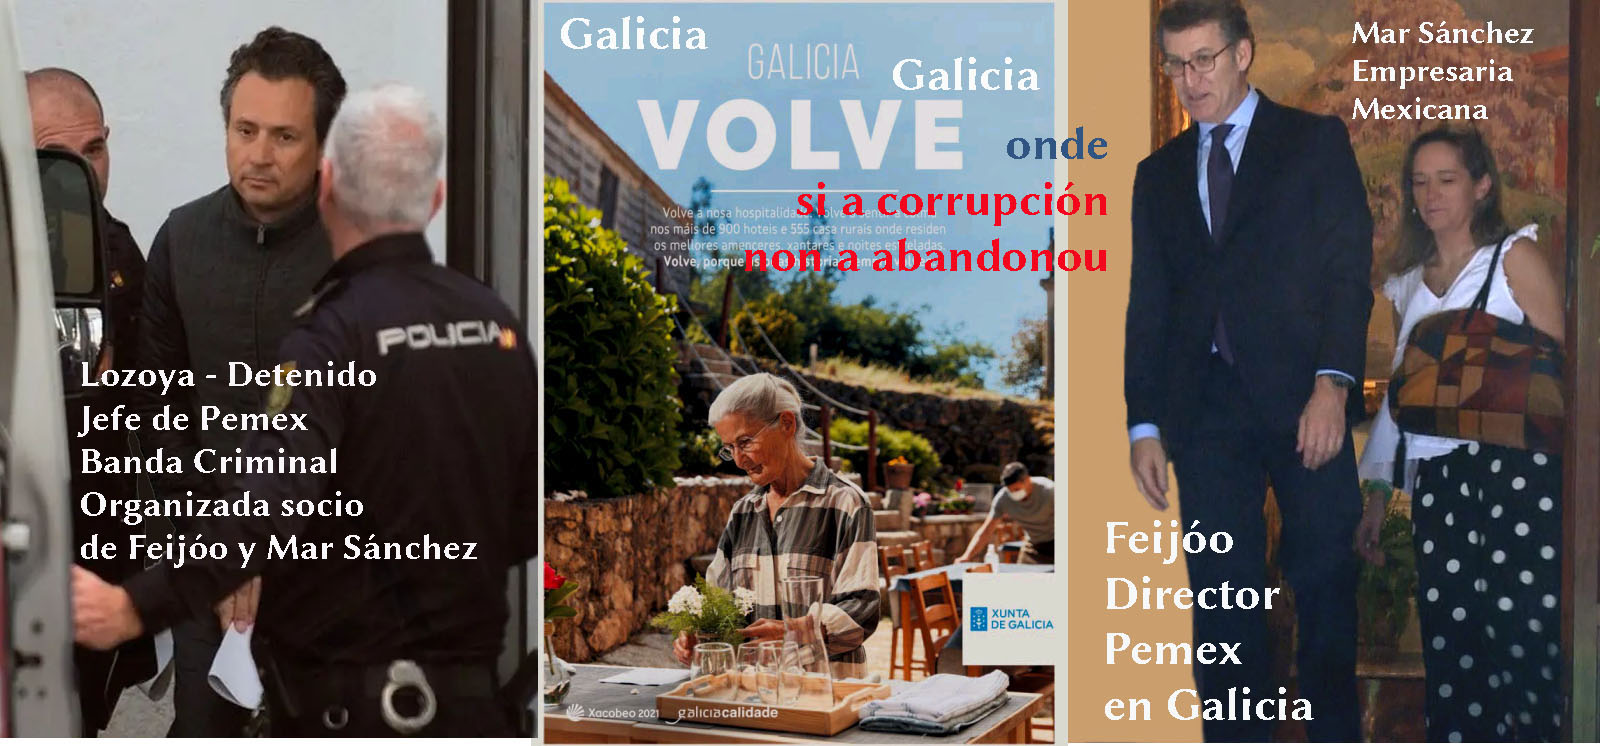 GaliciaGaliciaGalicia #GaliciaVolve "non" #GaliciaSigue con ...